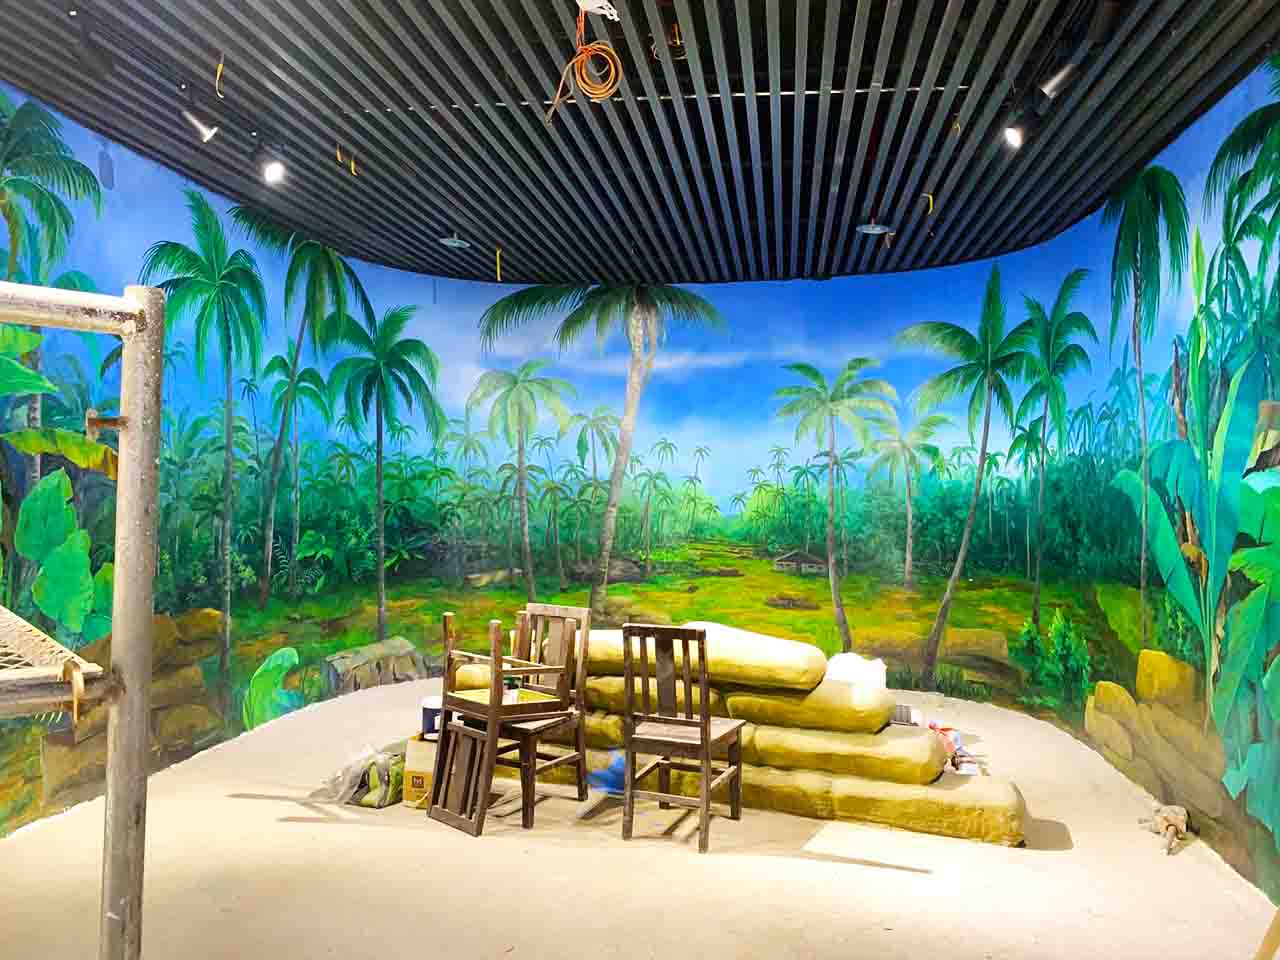 博物馆纪念馆展厅椰树林场景还原画墙绘壁画彩绘涂鸦手绘成都澜泉文化